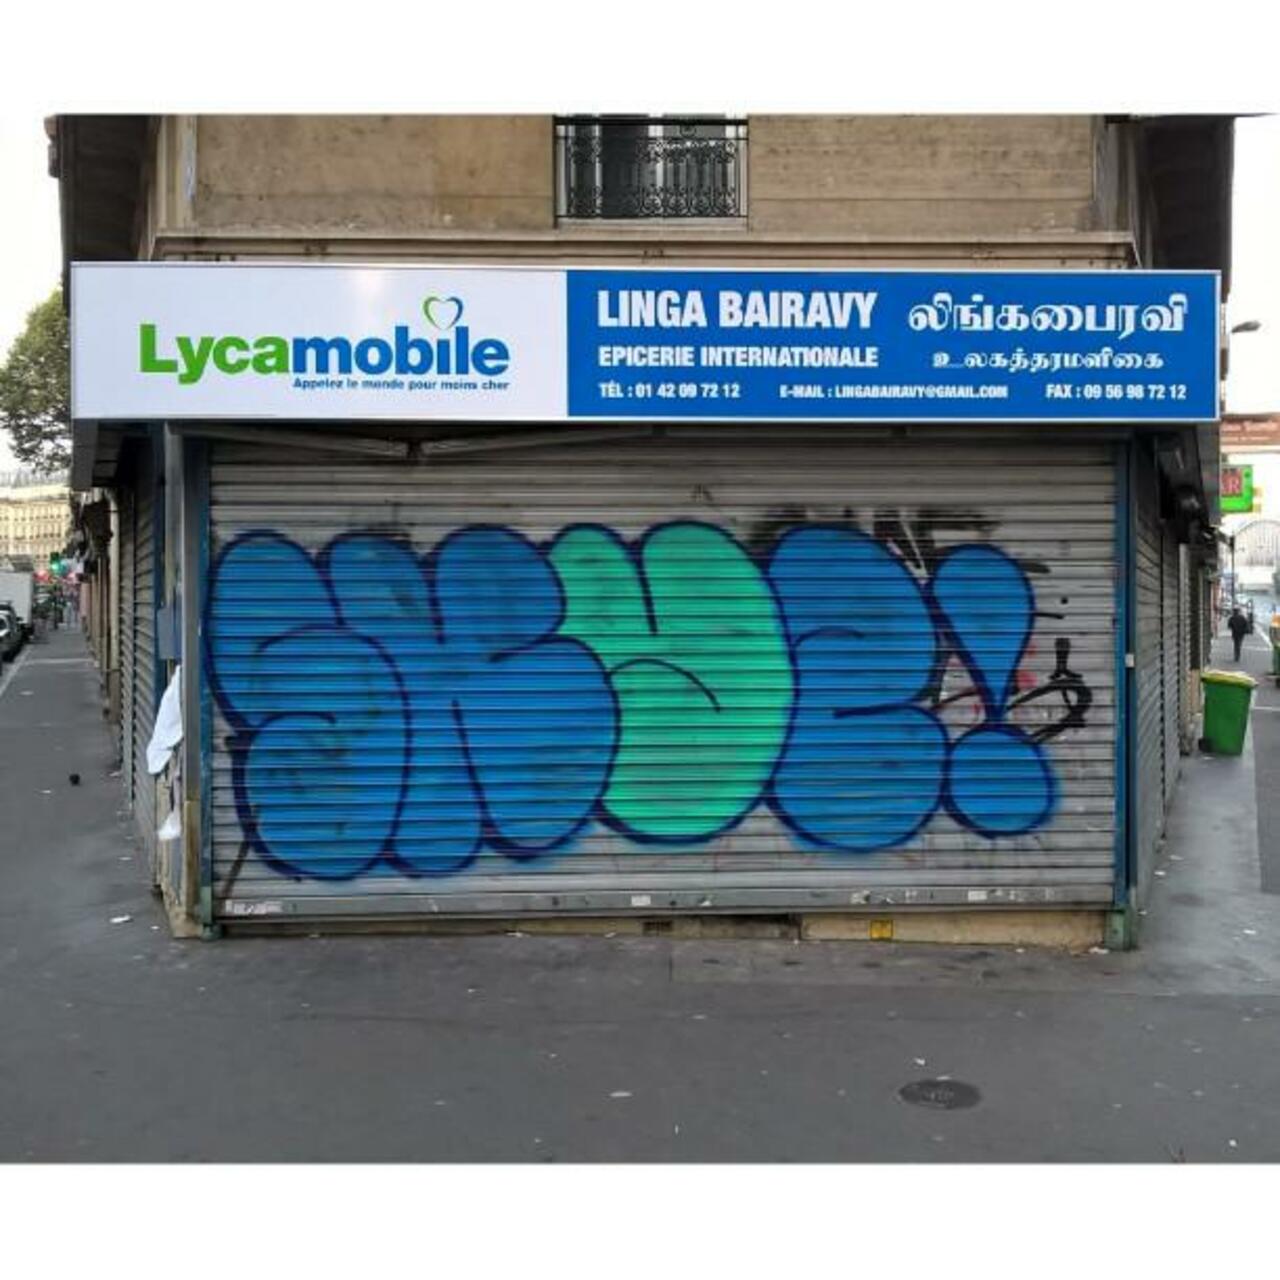 #Paris #graffiti photo by @maxdimontemarciano http://ift.tt/1L7spLQ #StreetArt http://t.co/W7SJvat1eC